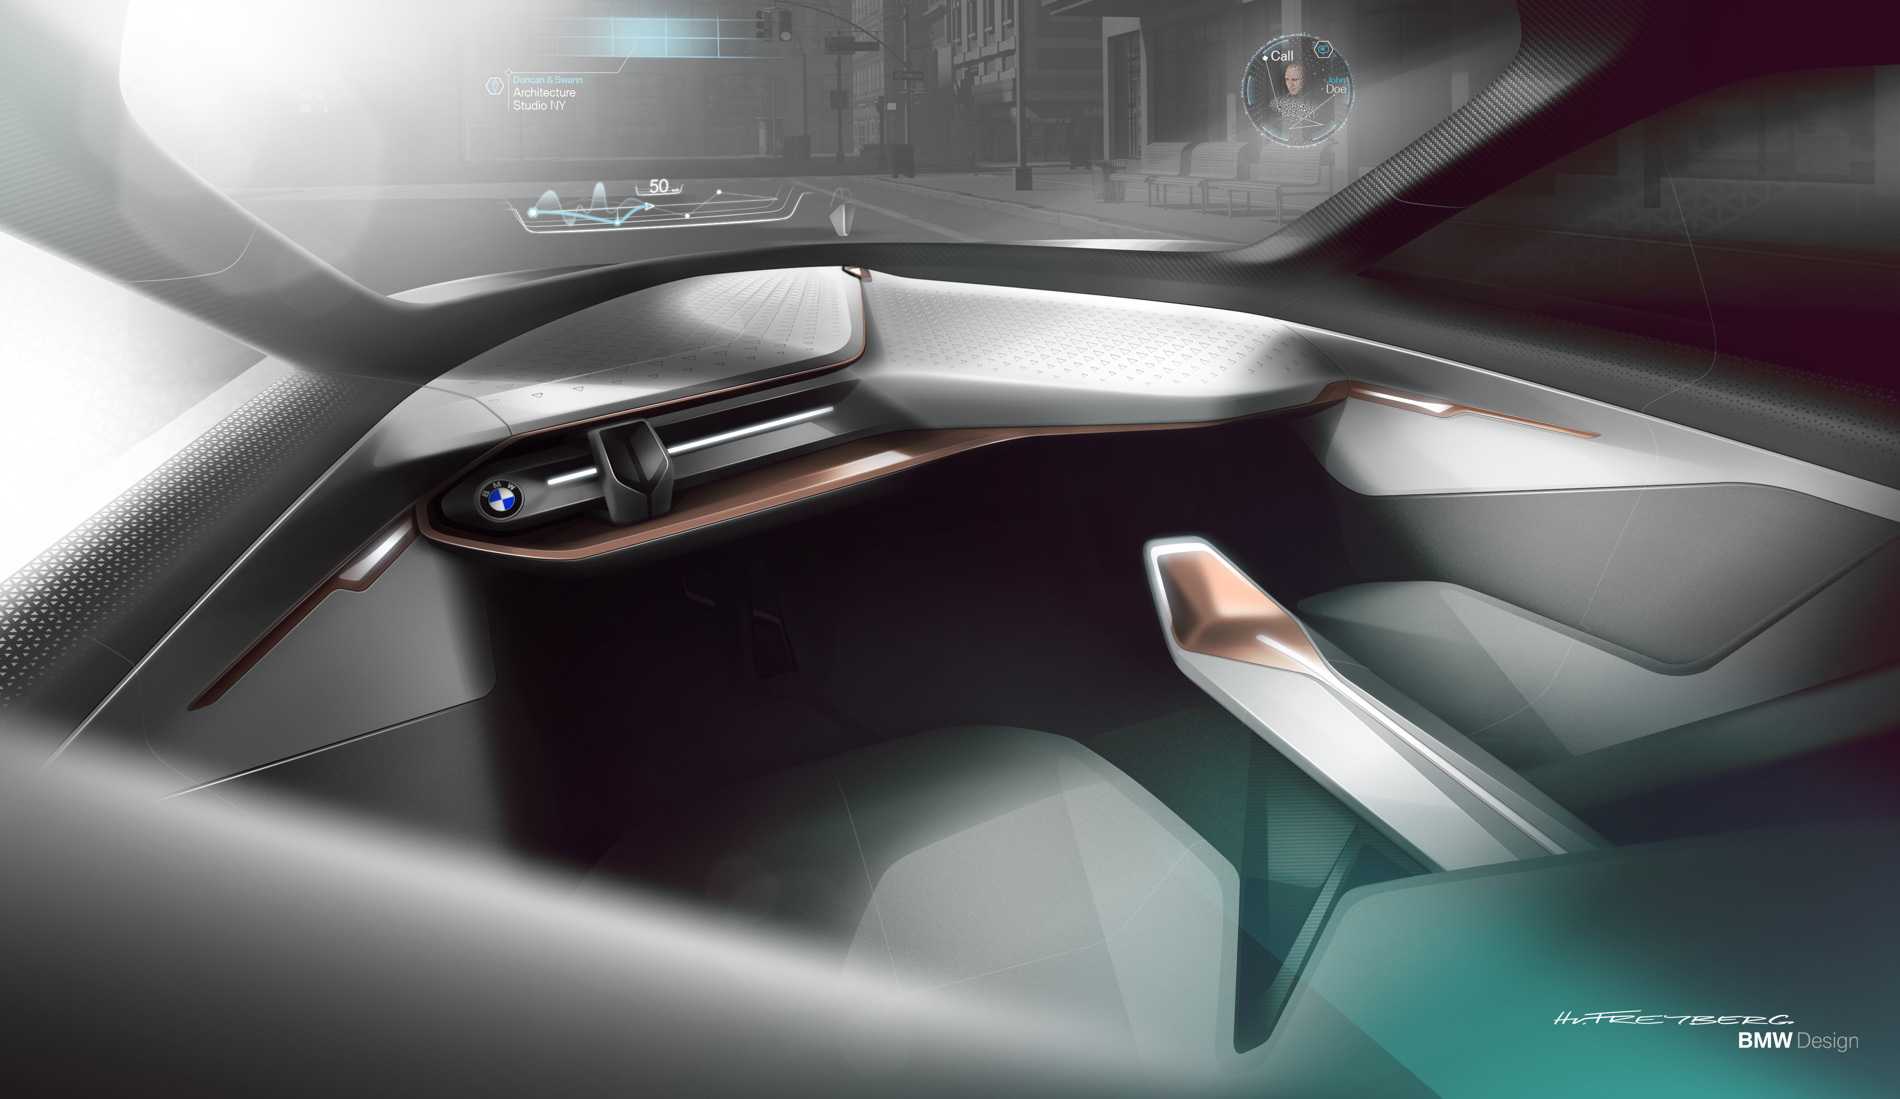 Немецкий BMW обнародовал несколько технических характеристик серийной версии своего электрокроссовера на основе концепта iNEXT